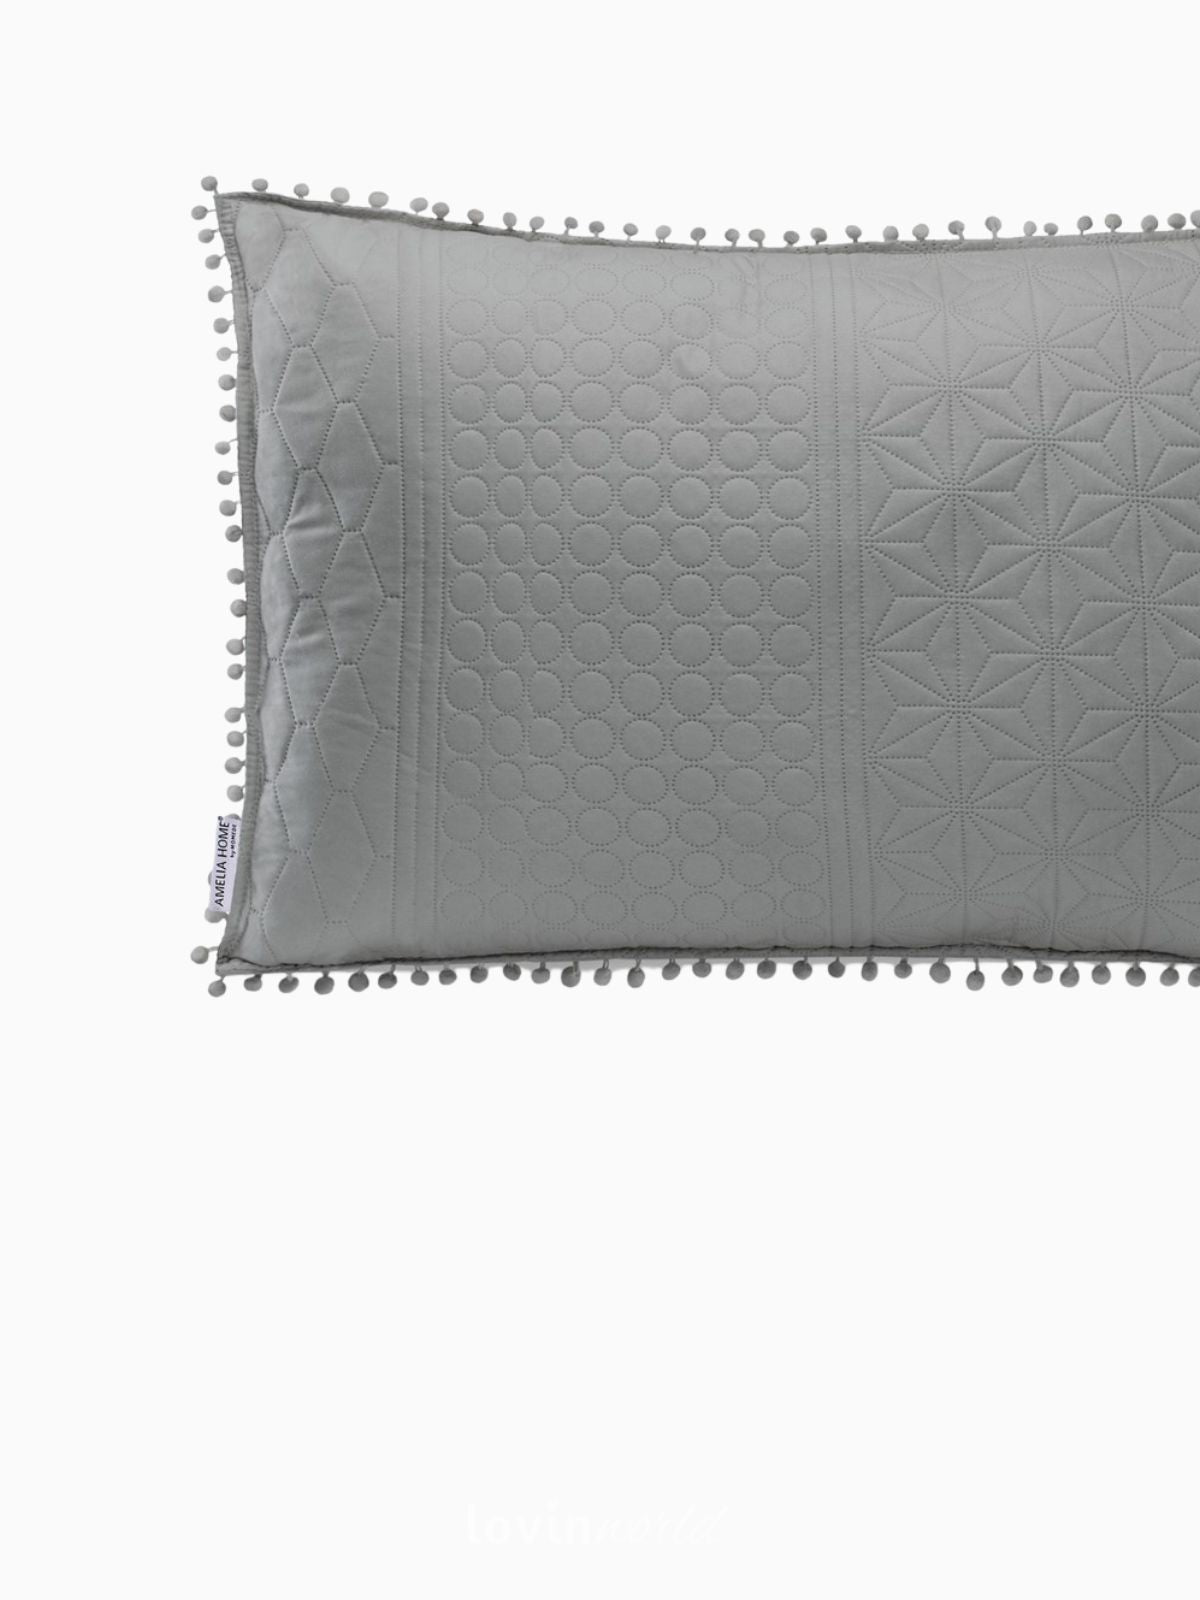 Cuscino decorativo Meadore in colore grigio 50x70 cm.-3